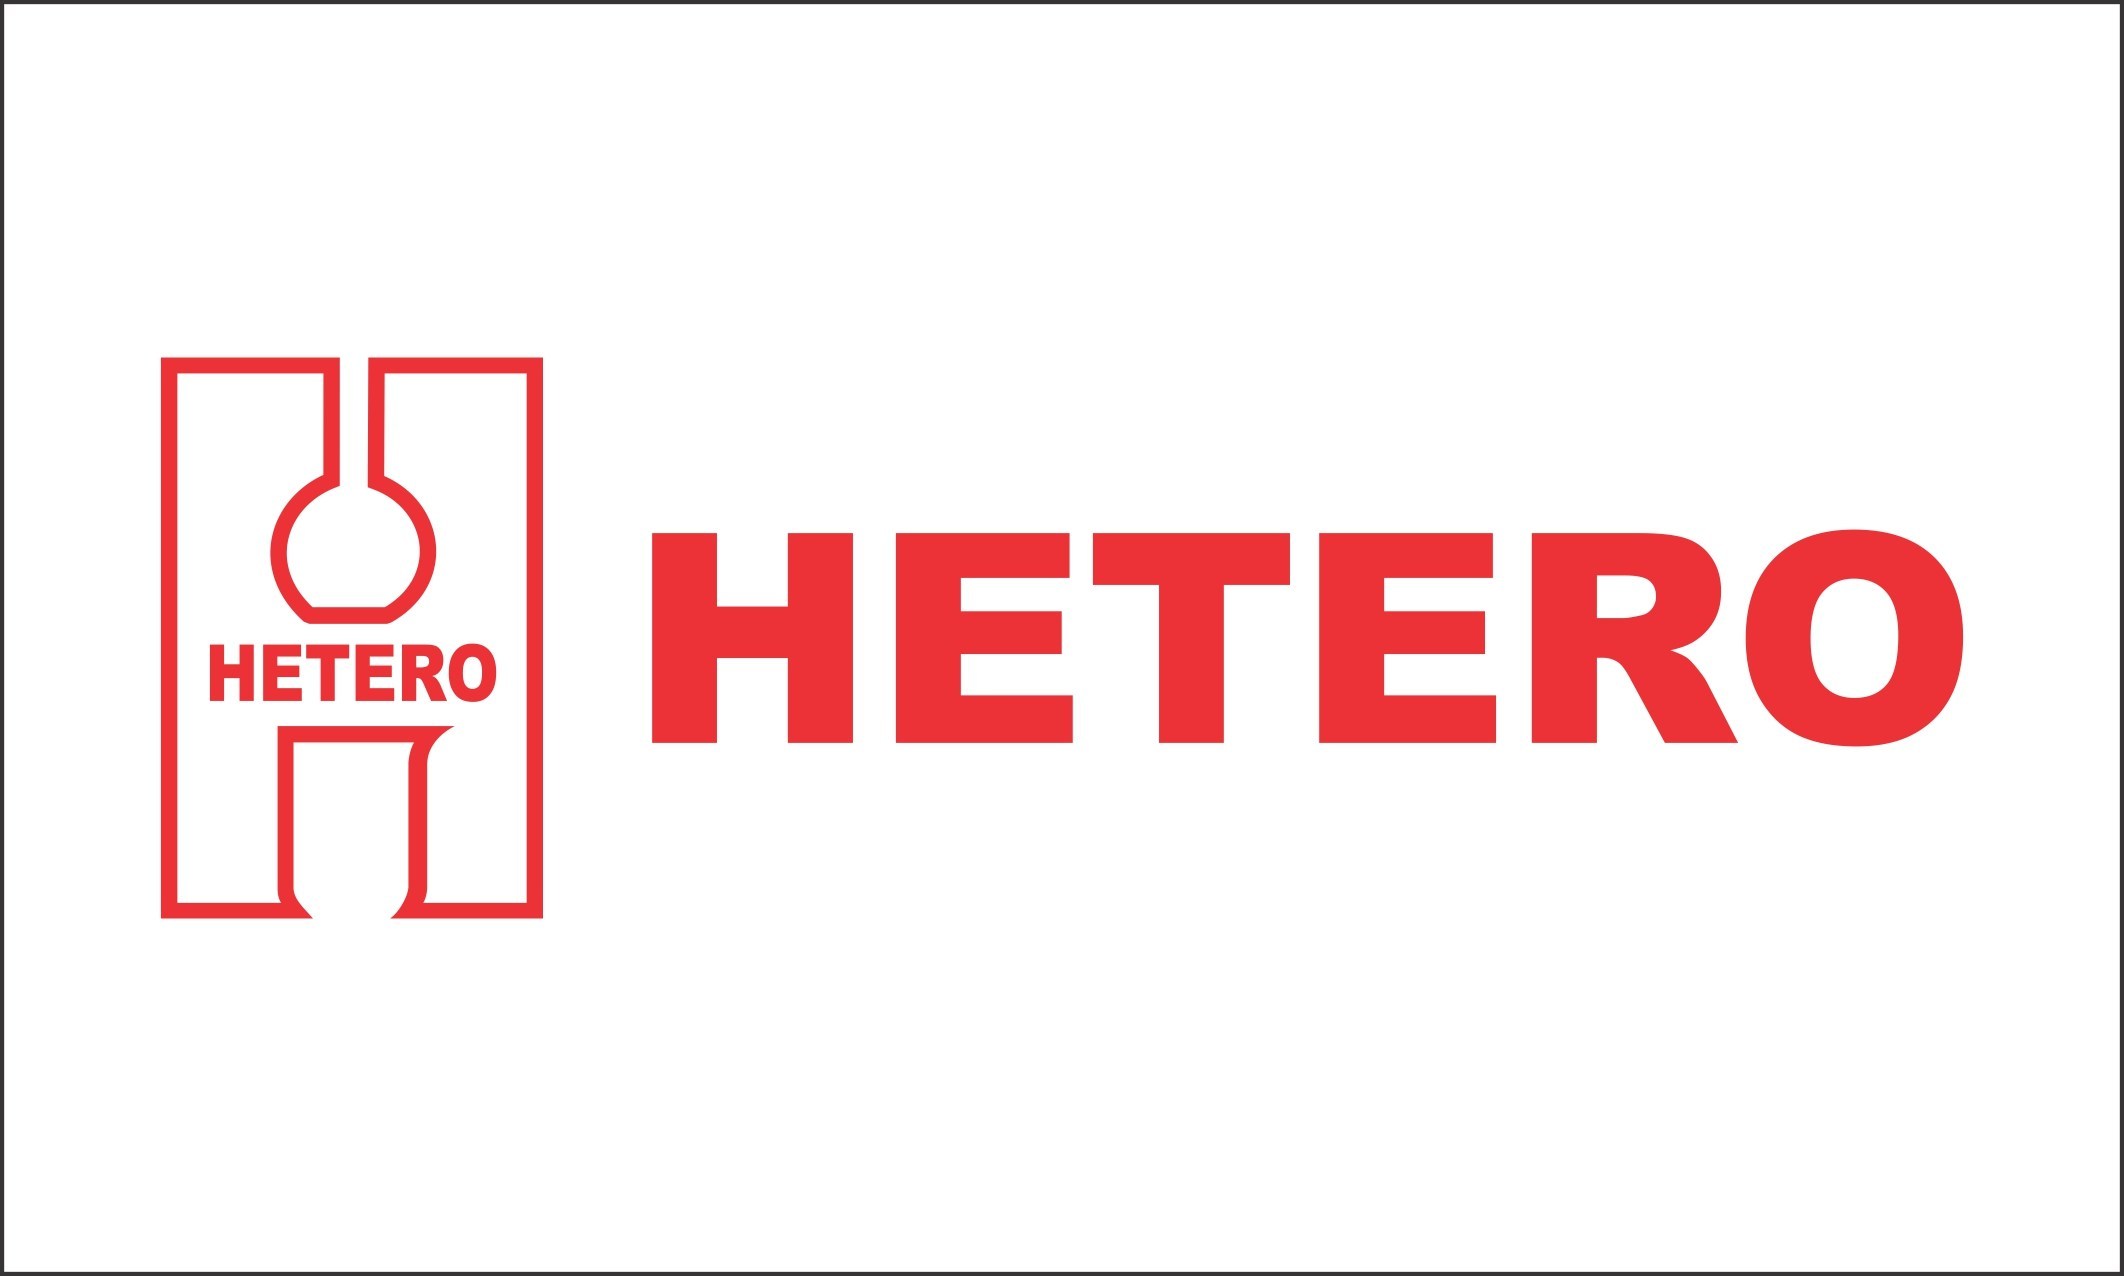 Hetero Group